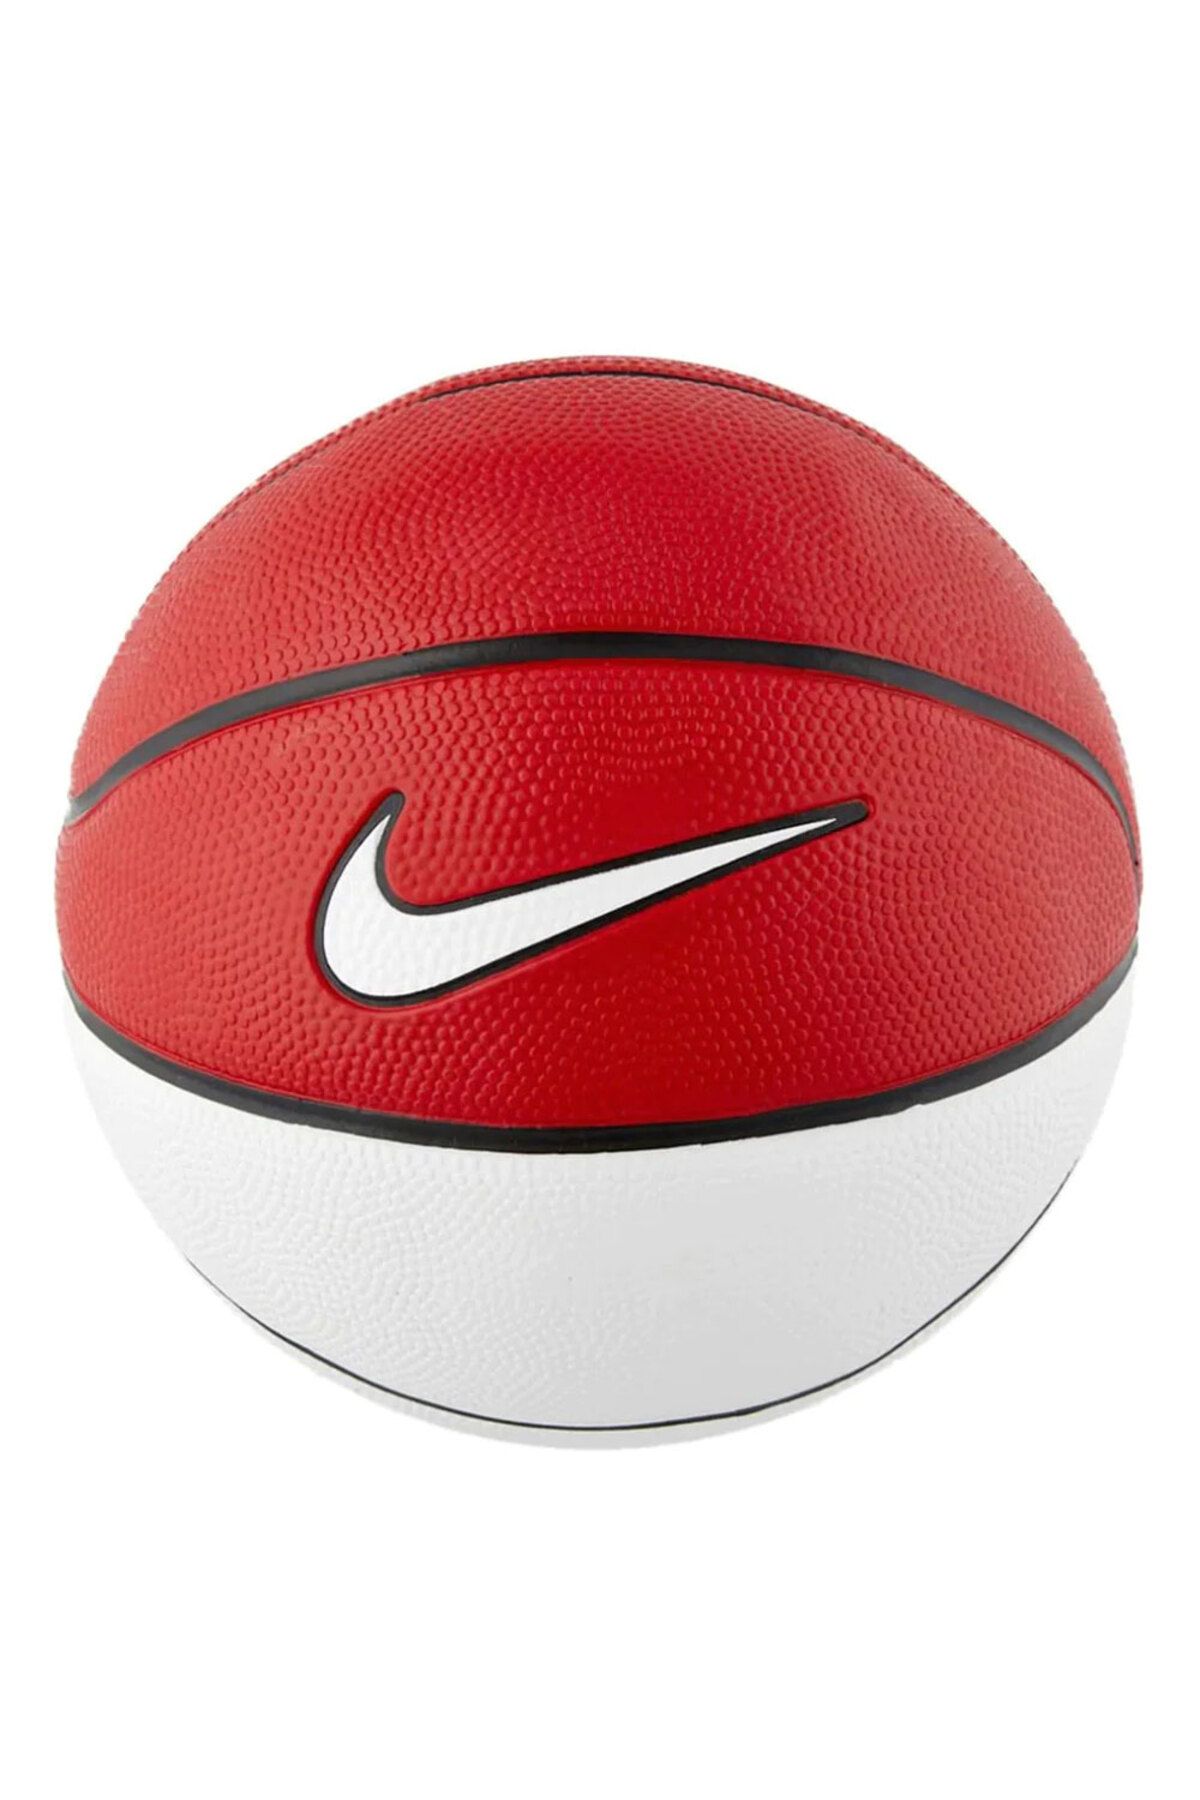 Nike Skills Basketbol Topu N.000.1285.626.03